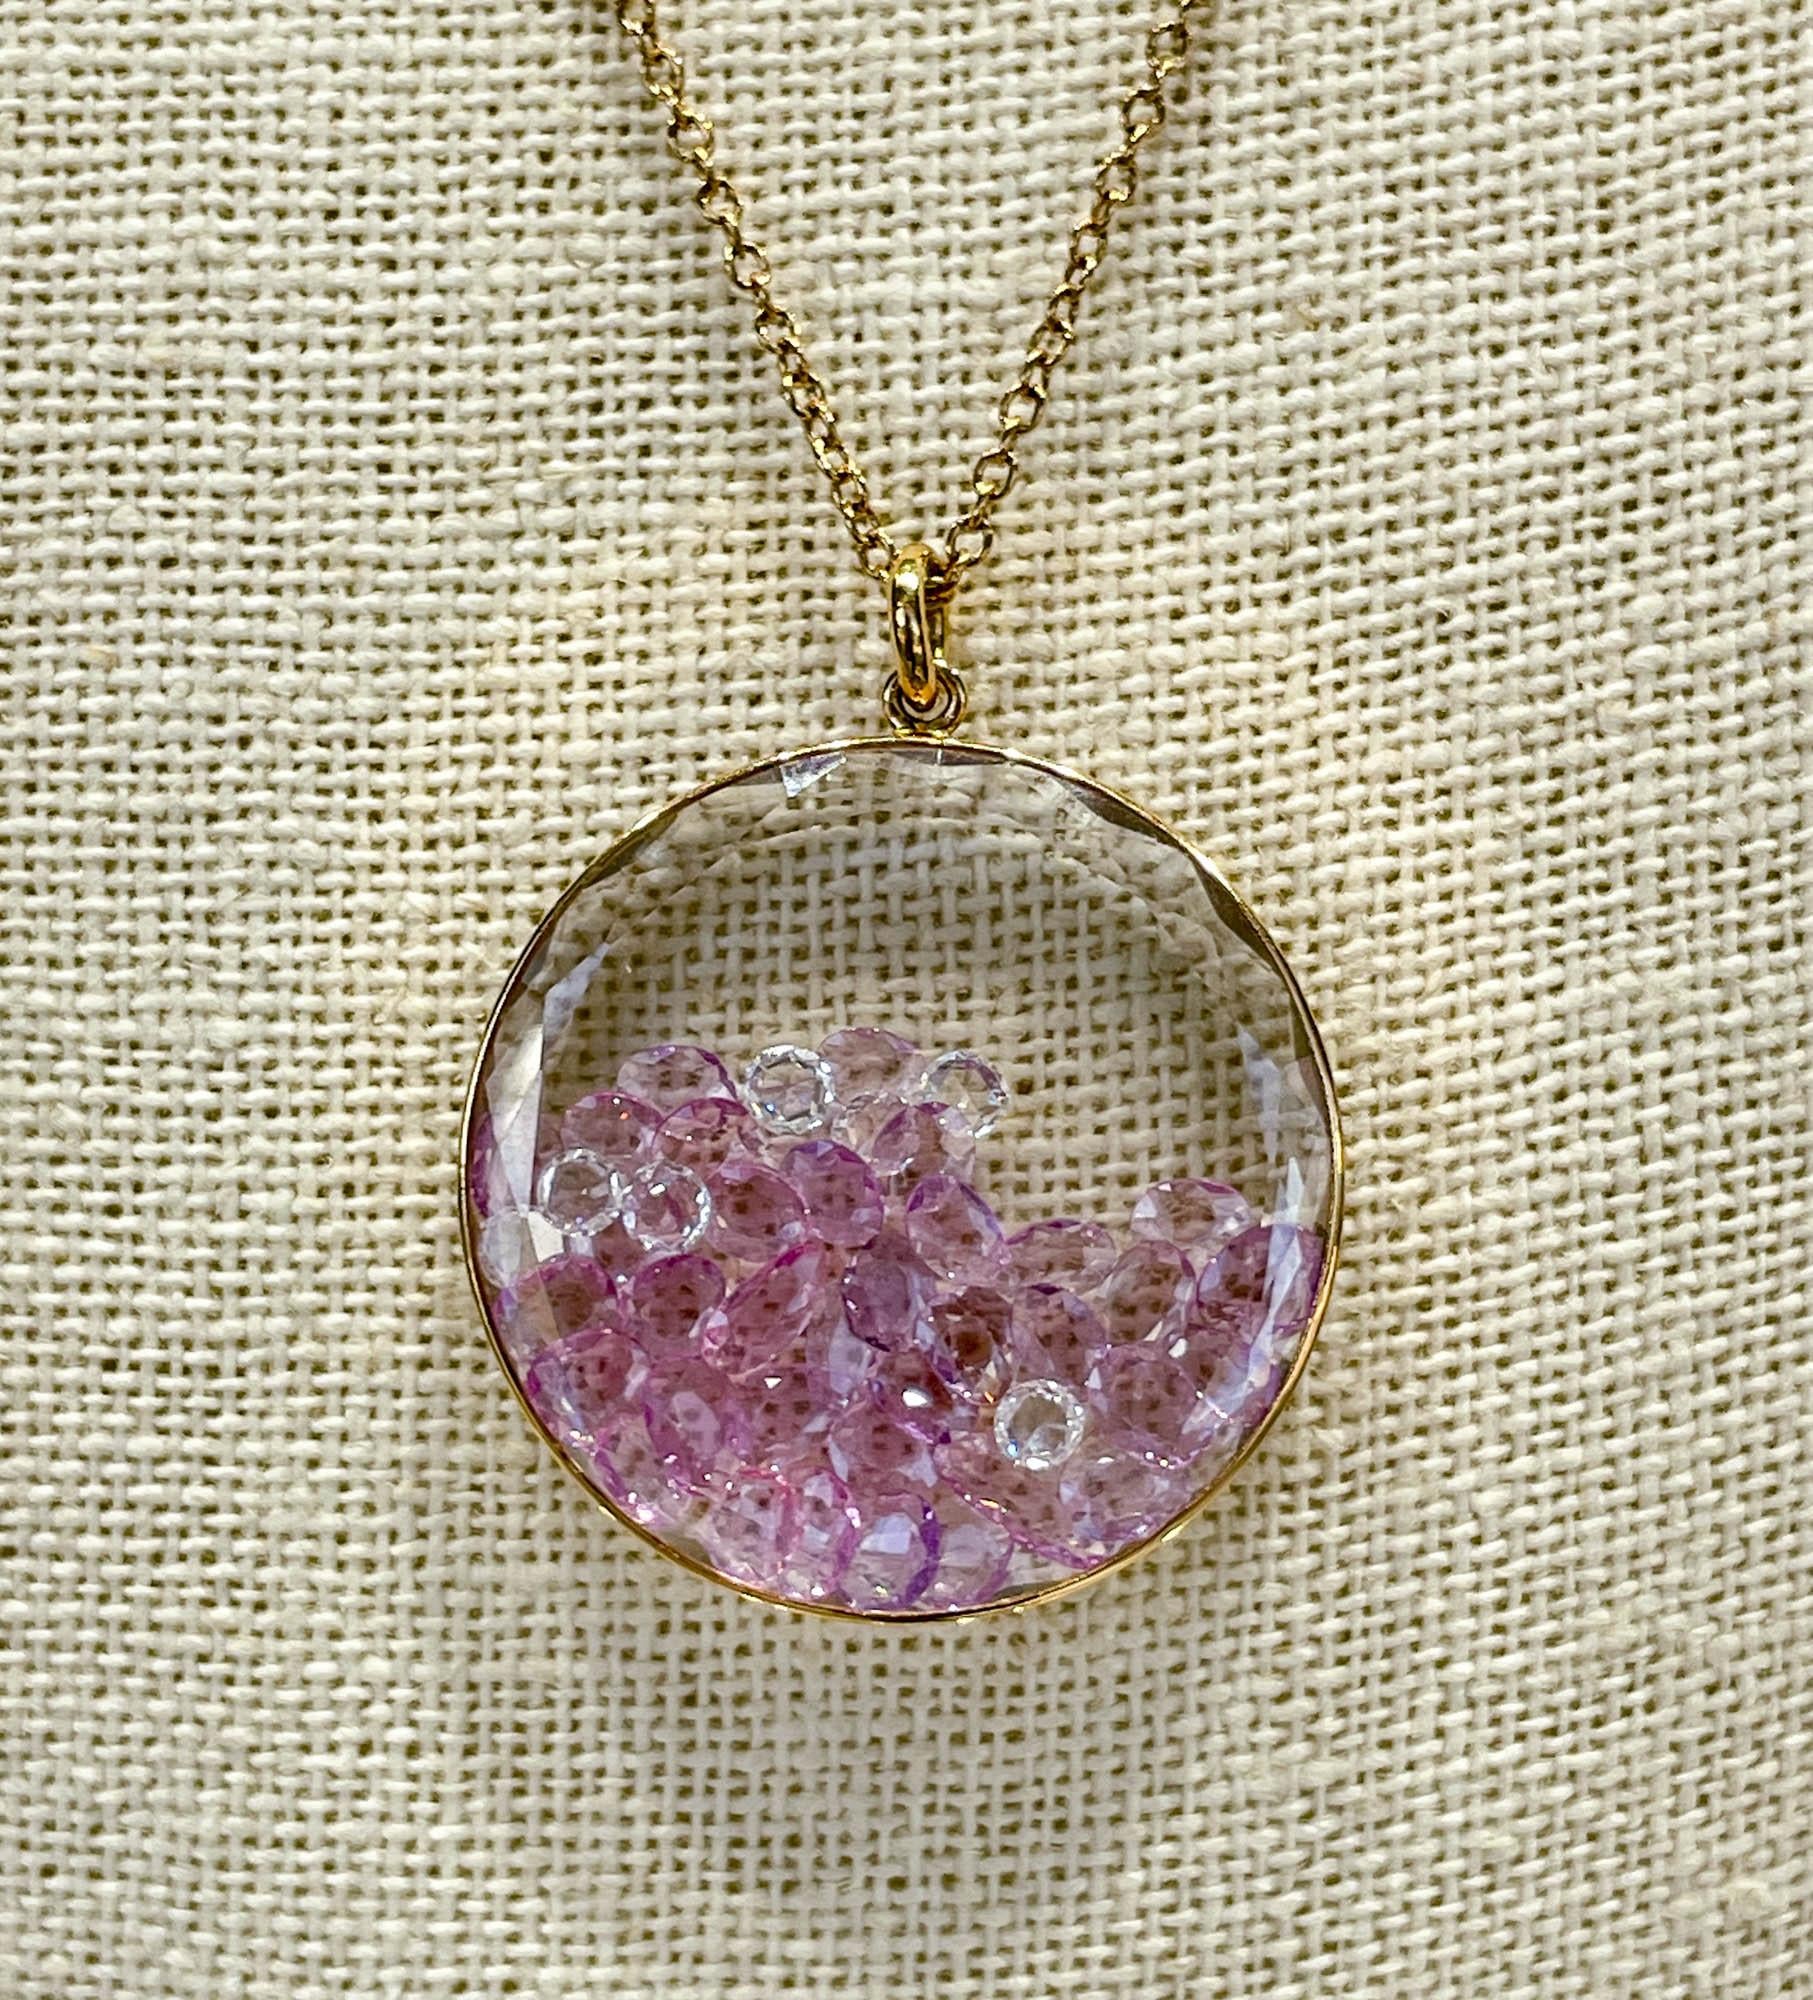 Moritz Glik 18k Rose Gold Diamond Lavender Sapphire Shaker Halskette mit 5,07ctw Lavendel Saphir und 0,78ctw Rose geschliffenen Diamanten in Saphir Fall gesetzt.

Die Halskette ist verlängerbar und 30,5-33 cm lang. Das Saphirgehäuse hat einen